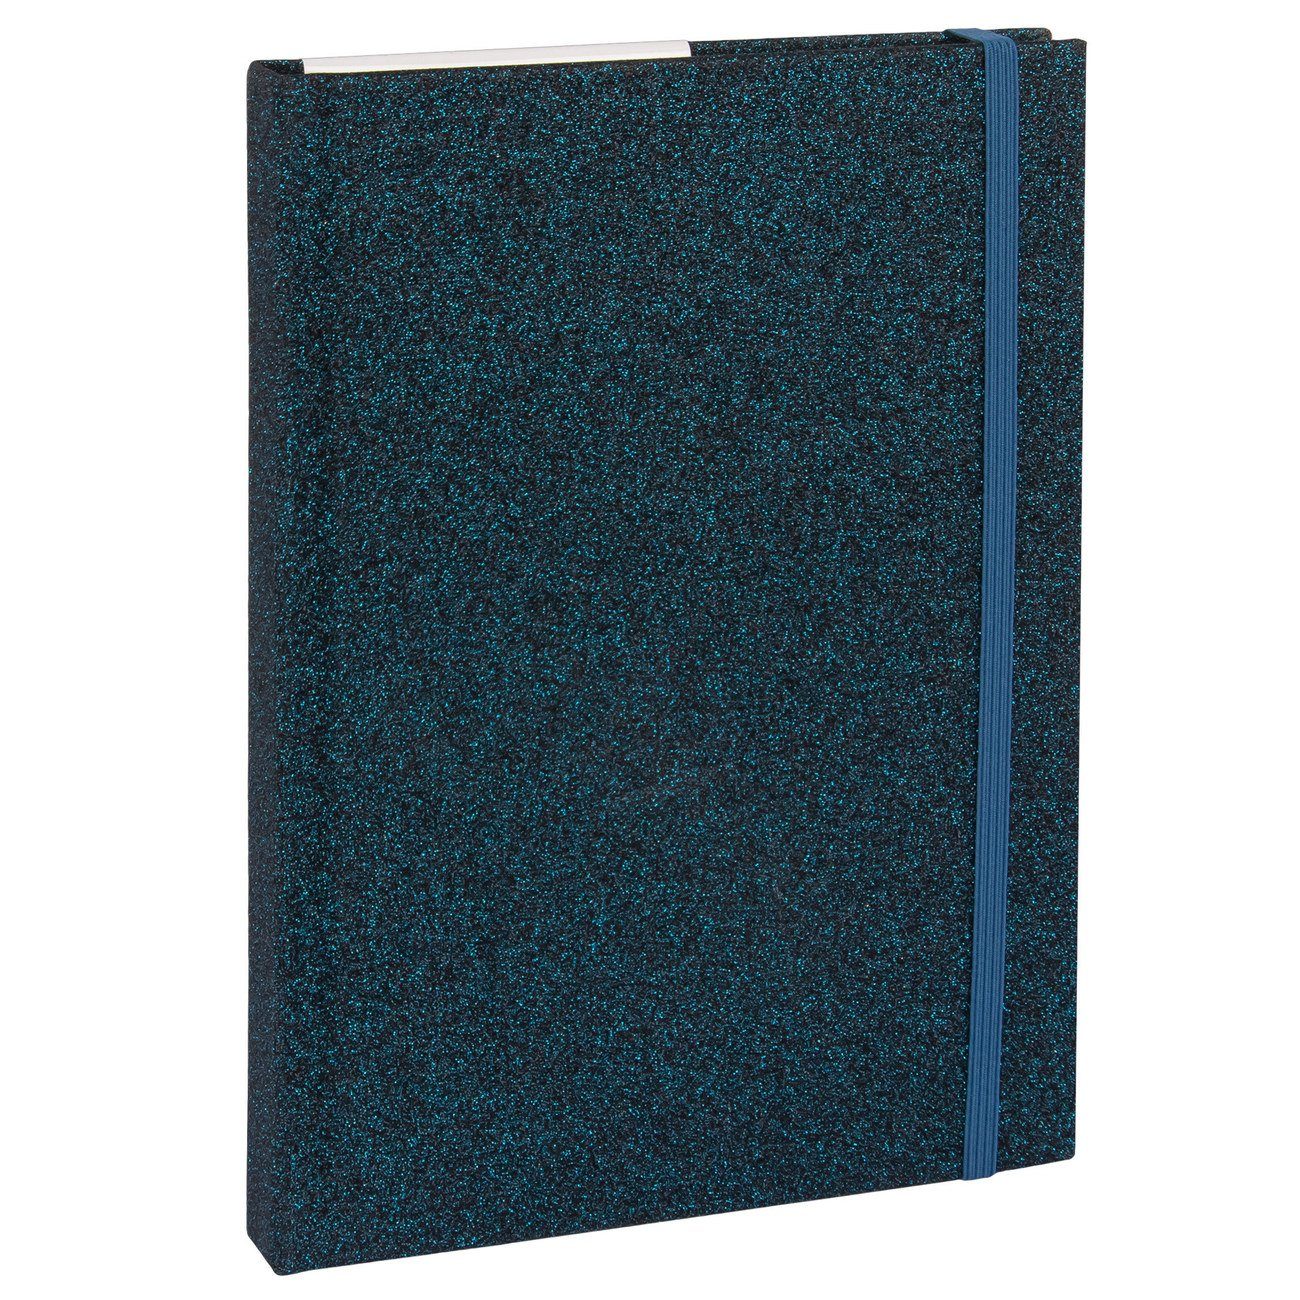 192 Idena - Seiten - kariert nachtblau Notebook Glitter - Notizbuch - Notizbuch